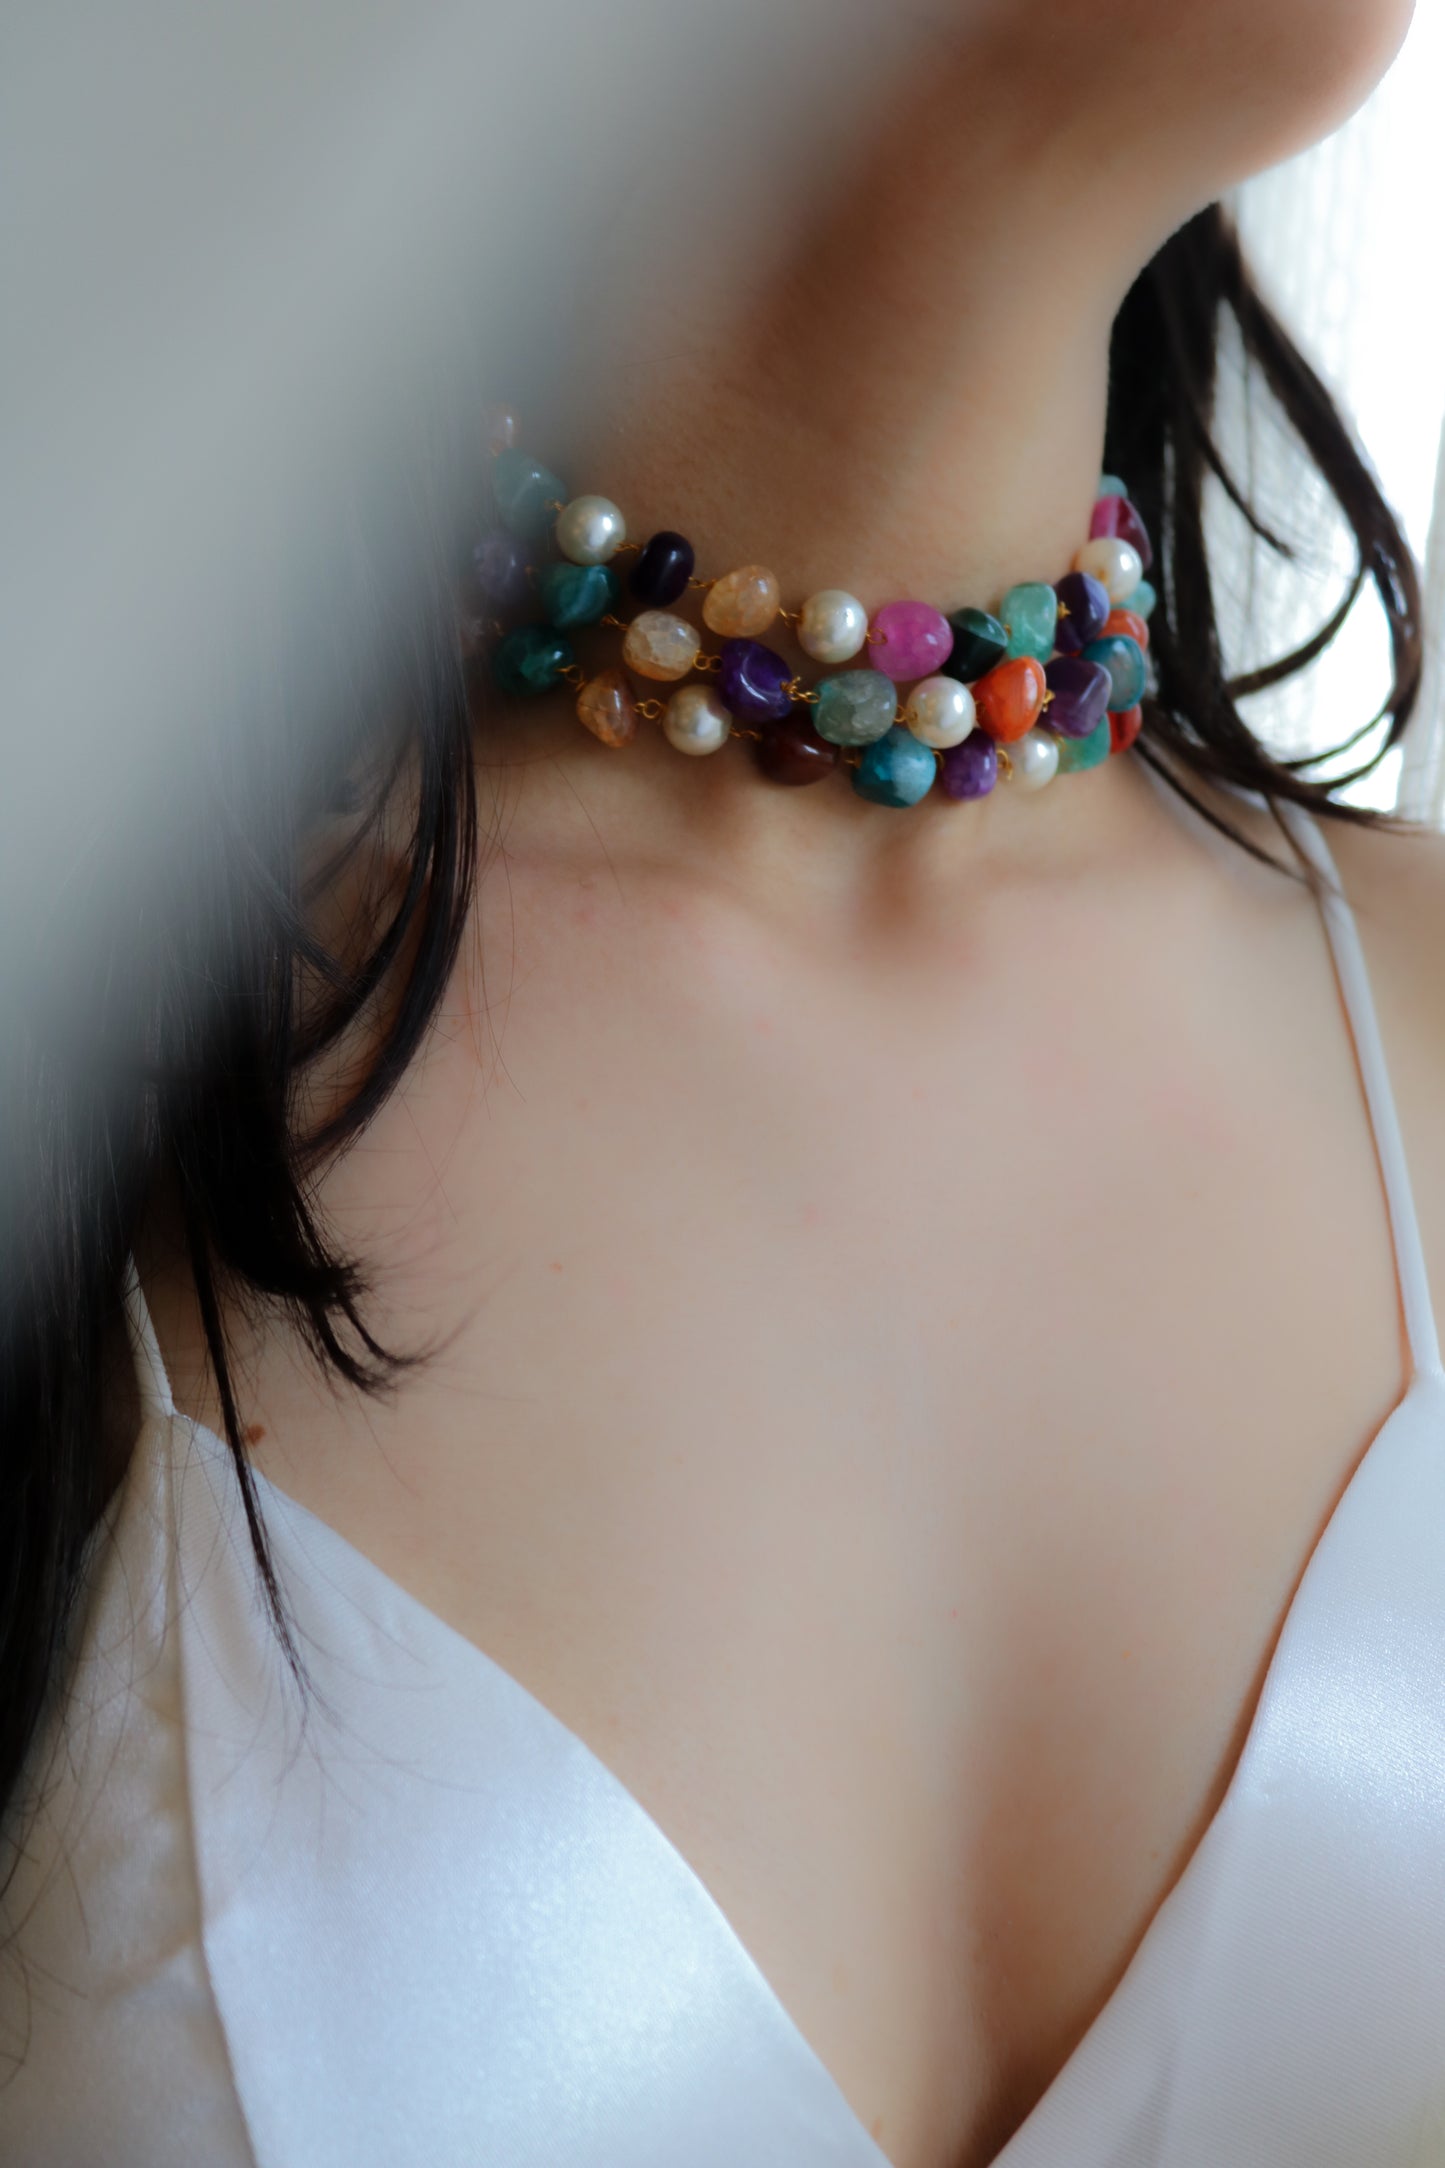 Dinisha Multicolored Necklace